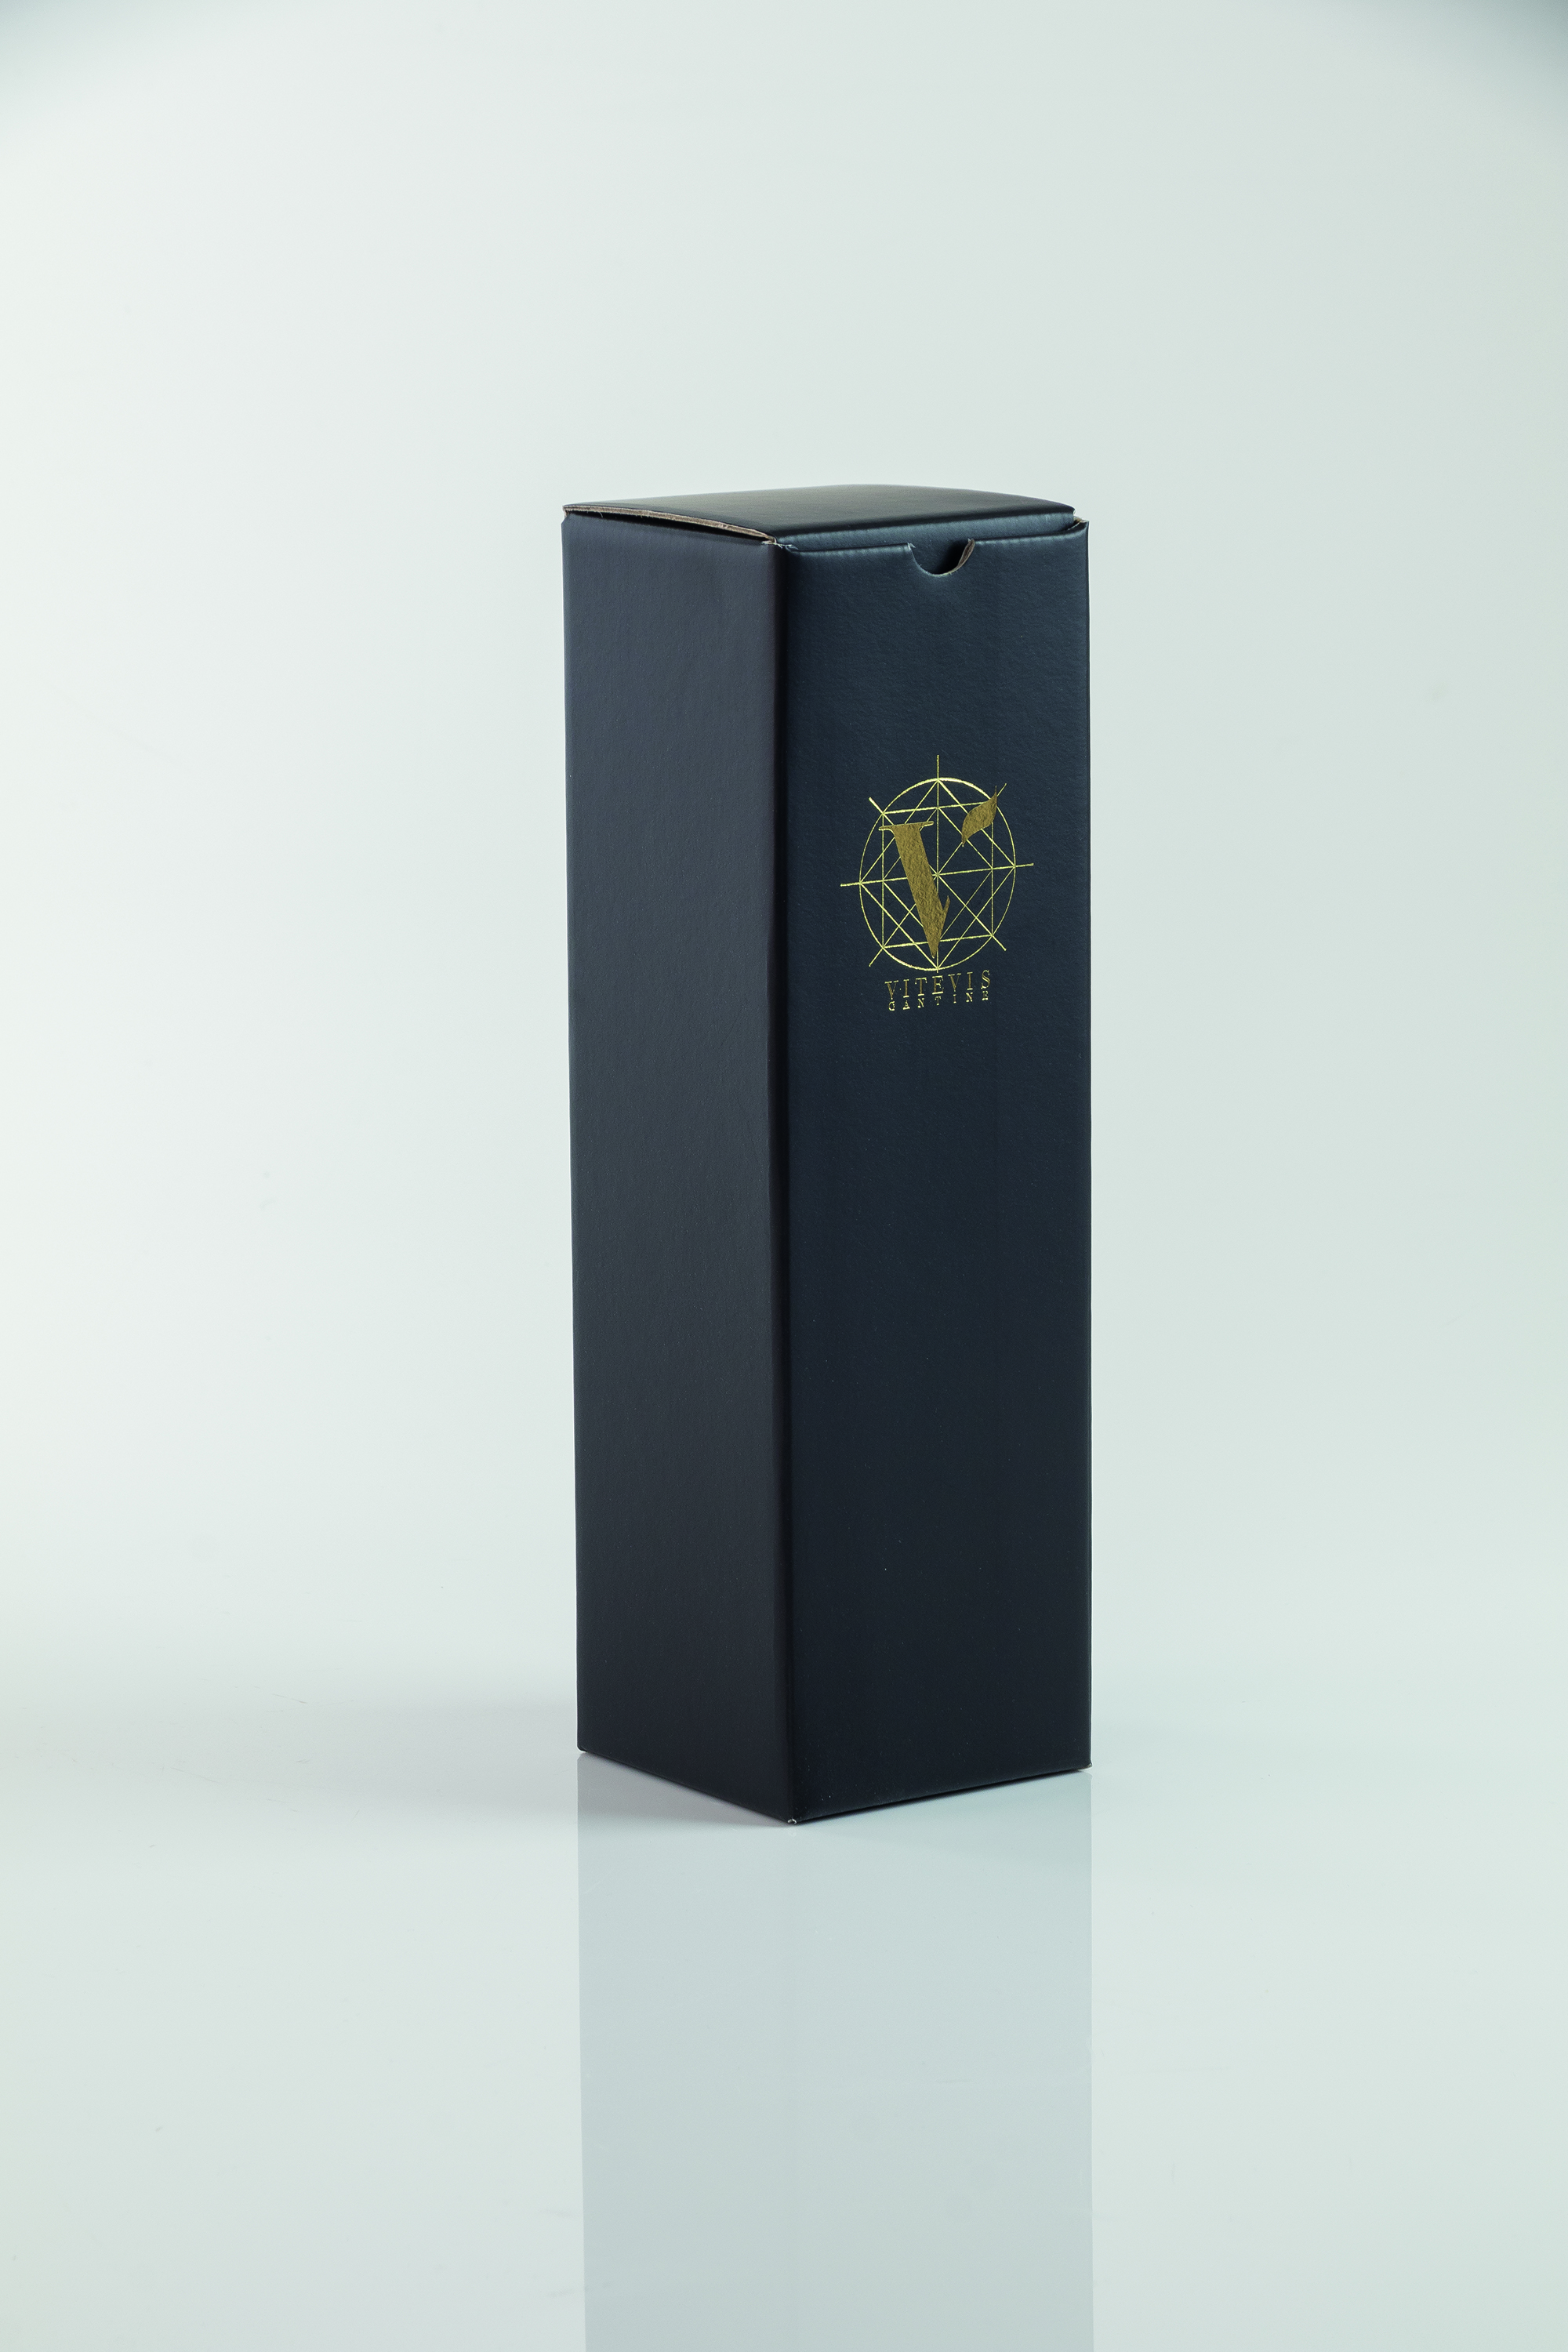 Dárková kazeta černá, logo VITEVIS pro lahev 0,75l